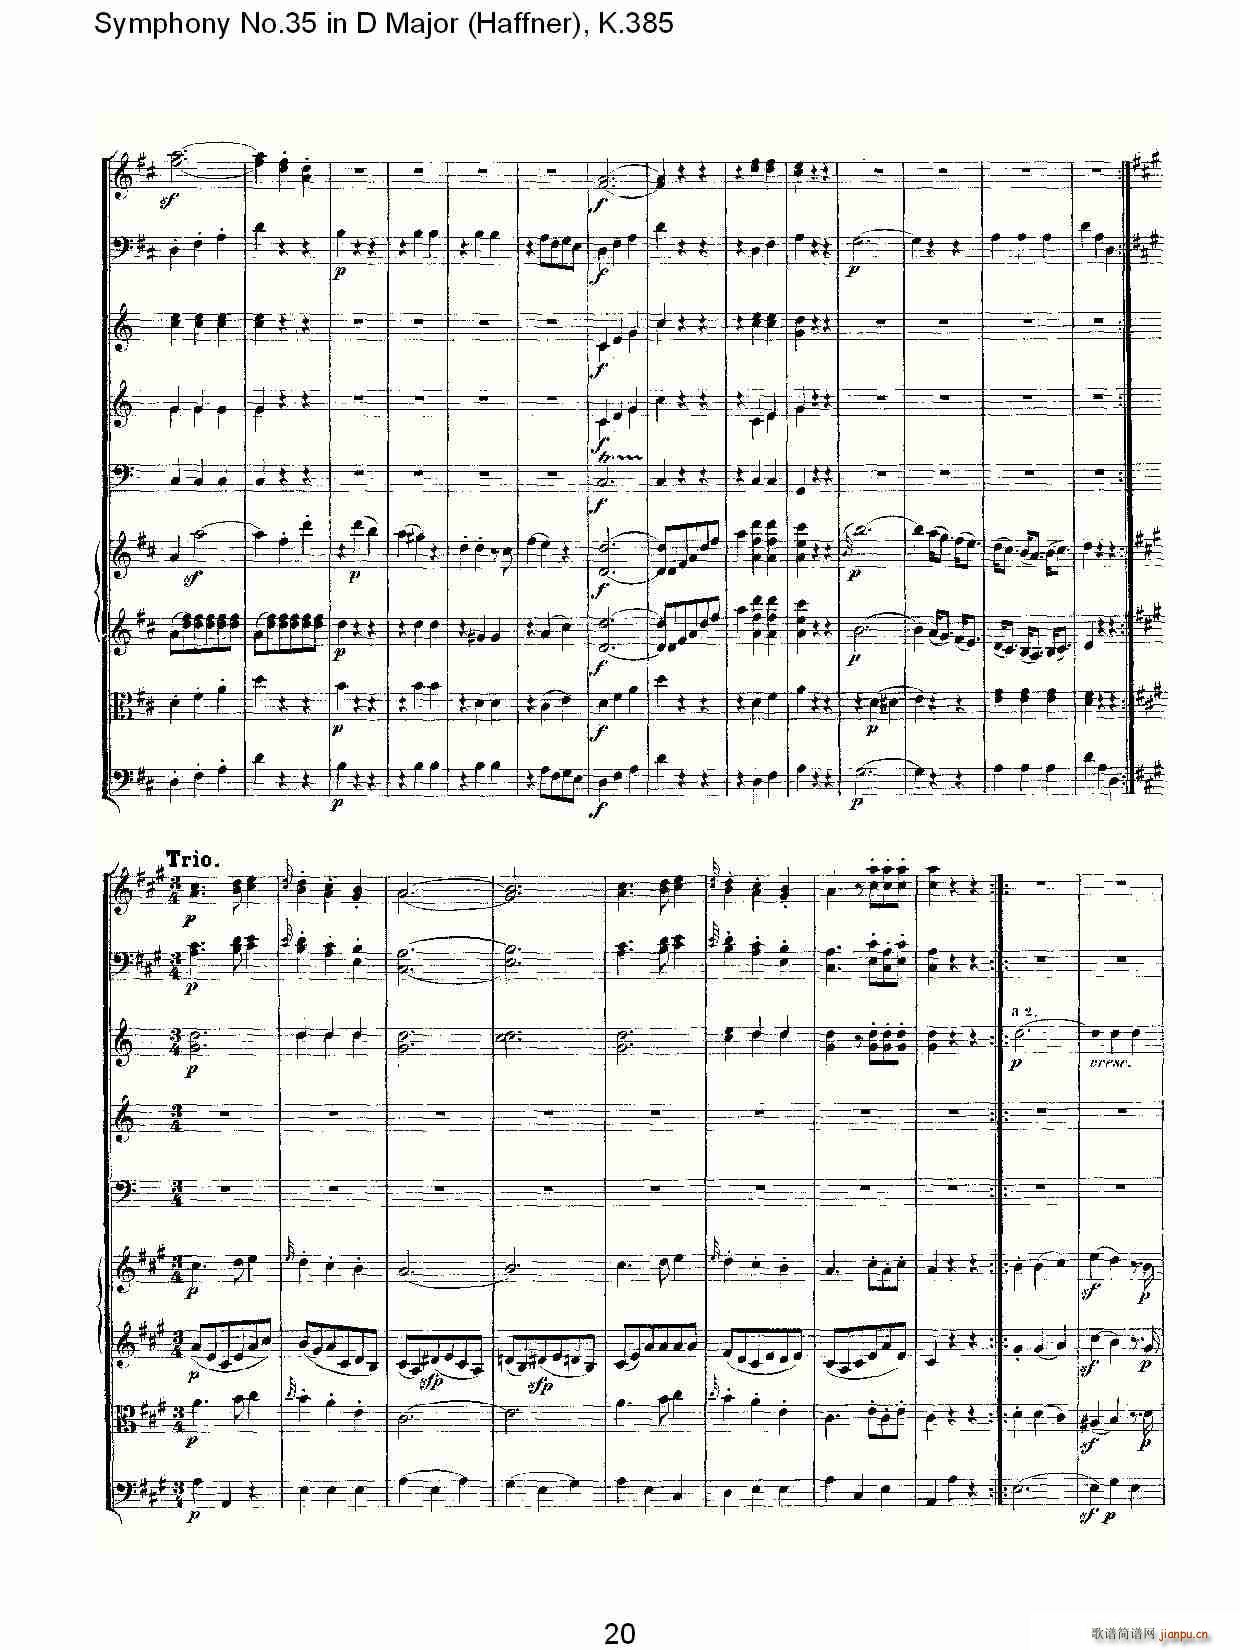 Symphony No.35 in D Major, K.385(ʮּ)20